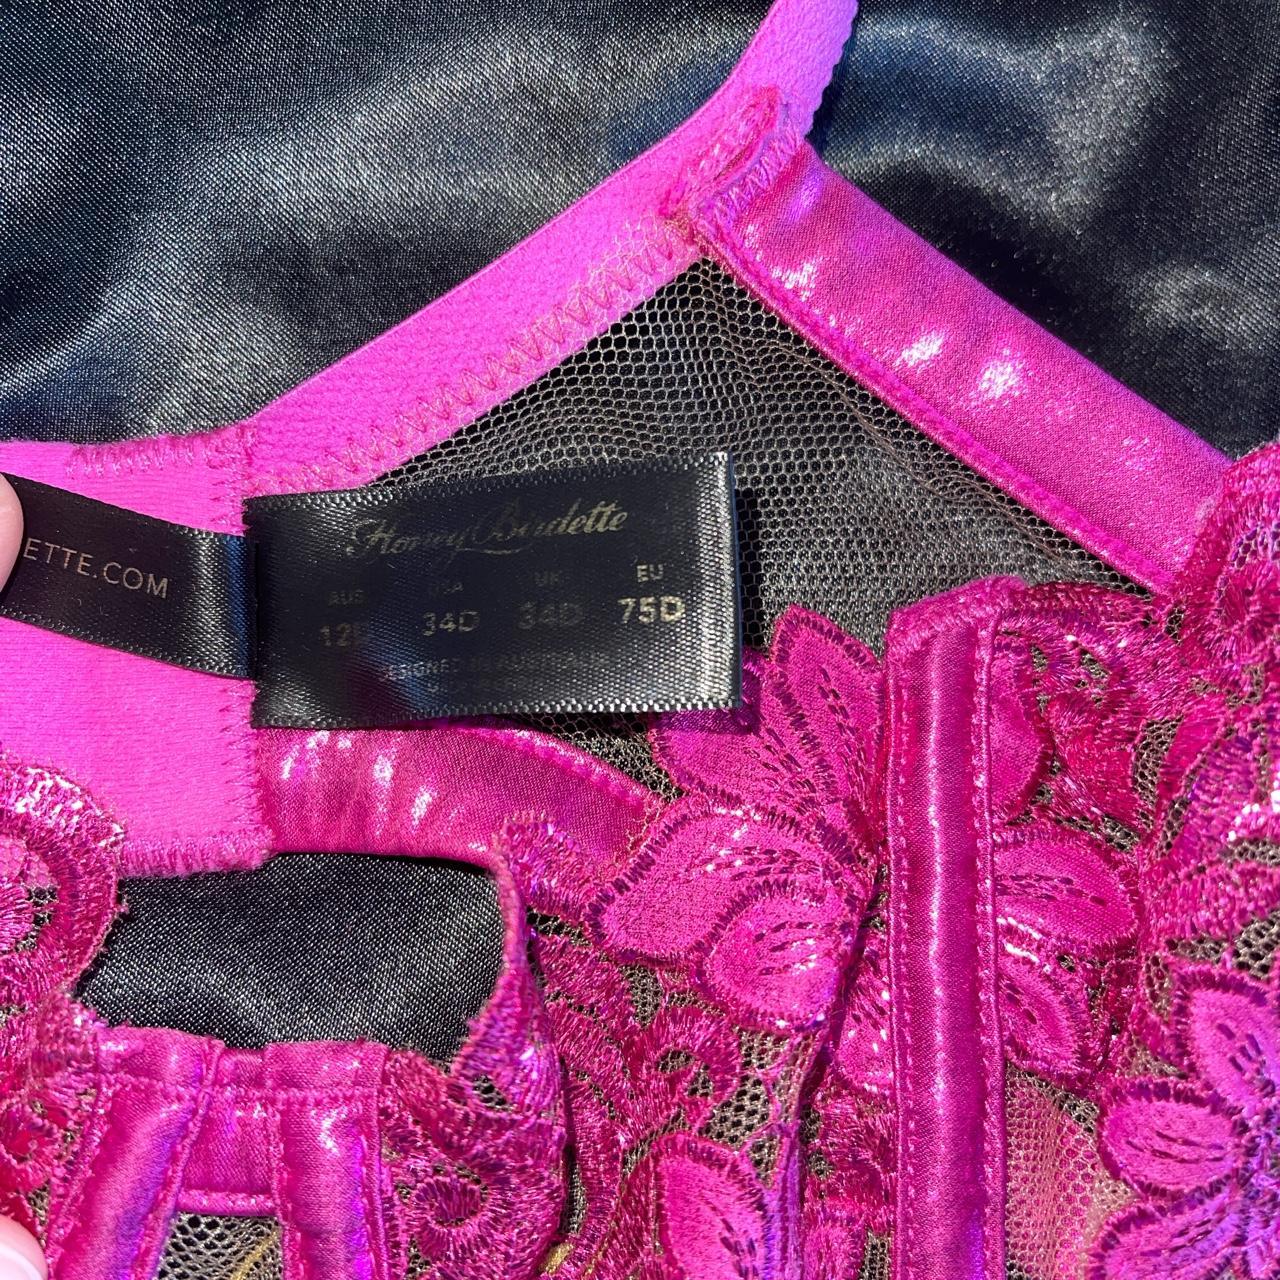 Honey Birdette Pink Amelie Set ️‍🔥 the bra has been... - Depop